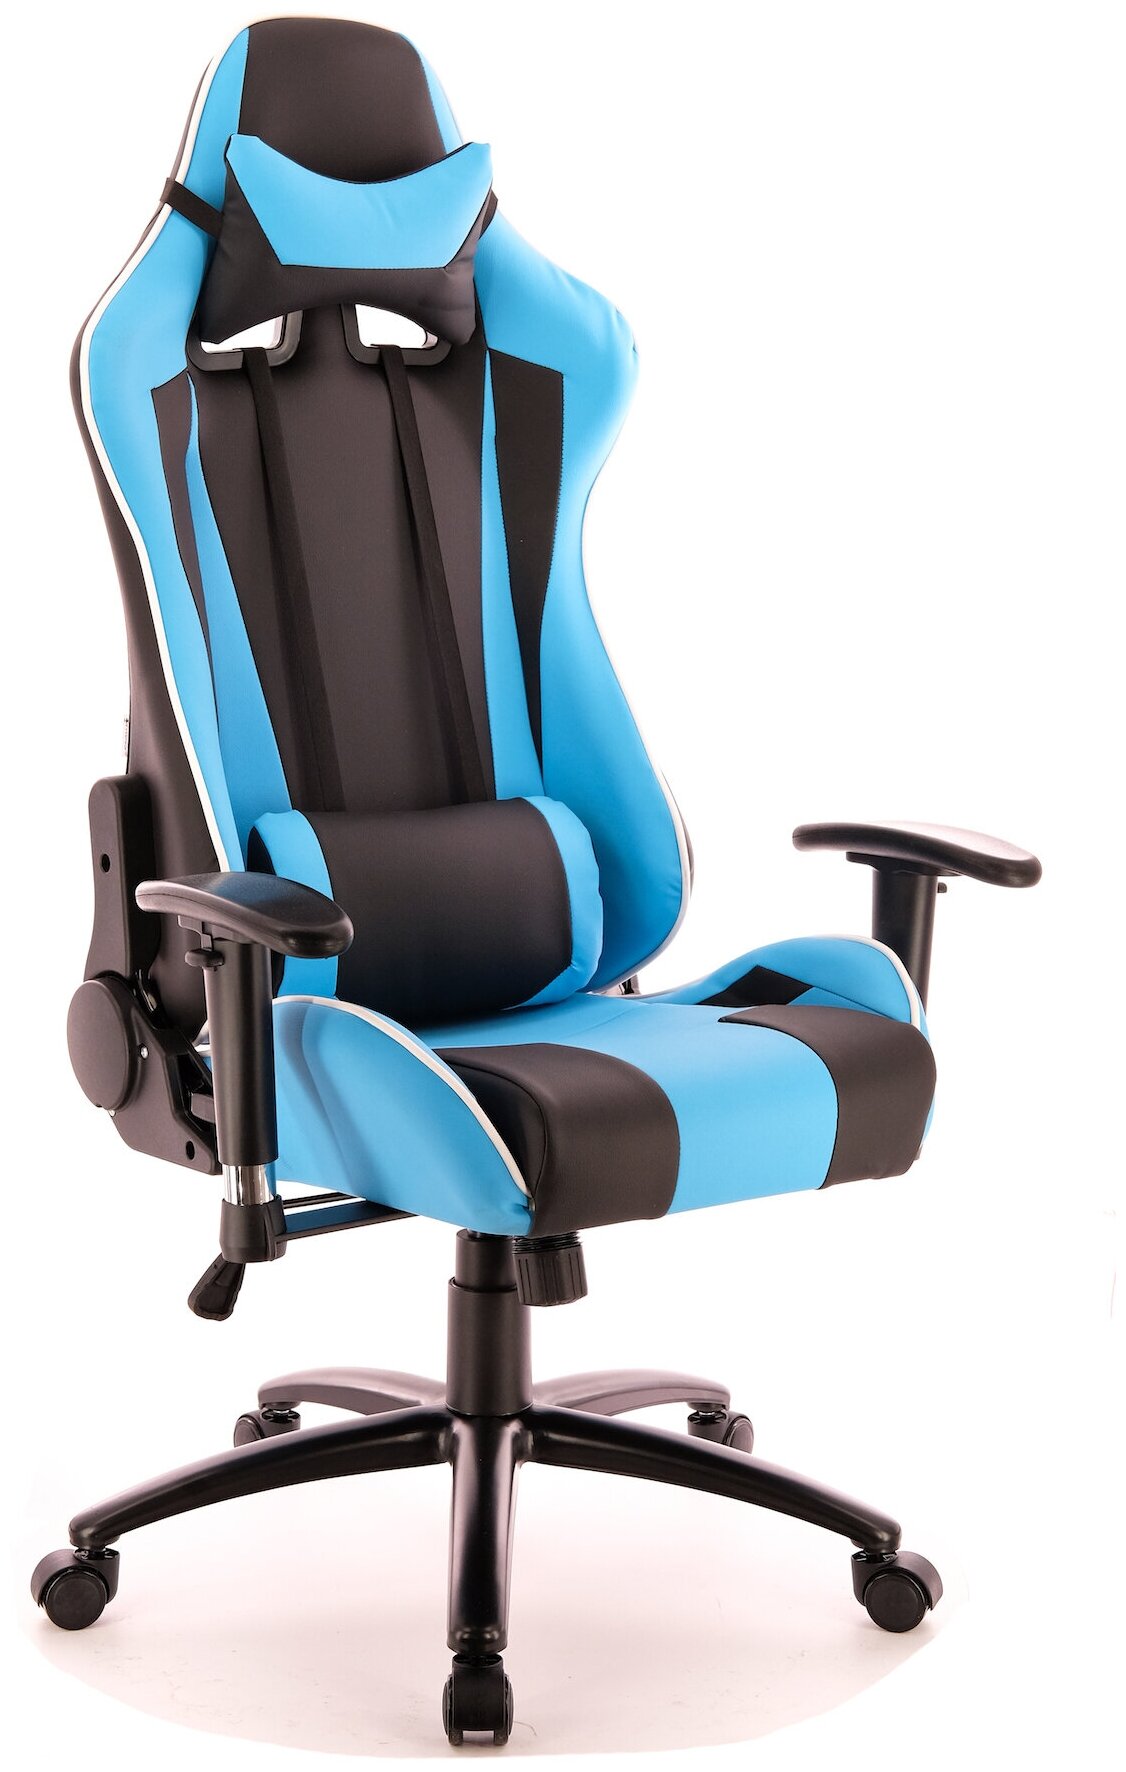 Игровое кресло Lotus S5 PU Голубой